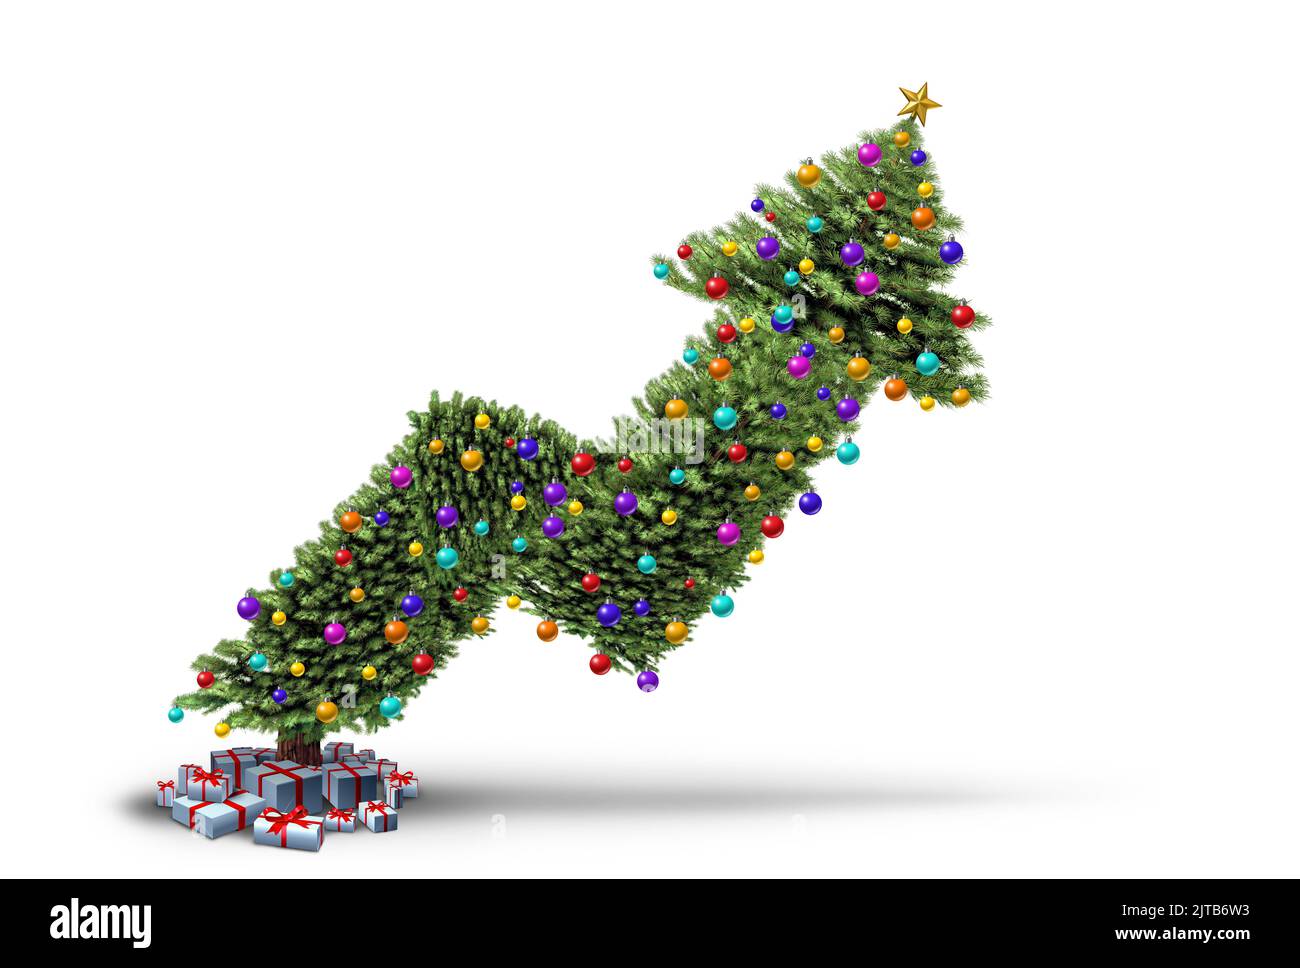 Aumento de los precios de Navidad y el aumento del costo de vacaciones de invierno de la compra de regalos como inflación estacional y el concepto de crisis financiera como un árbol de pino decorado Foto de stock